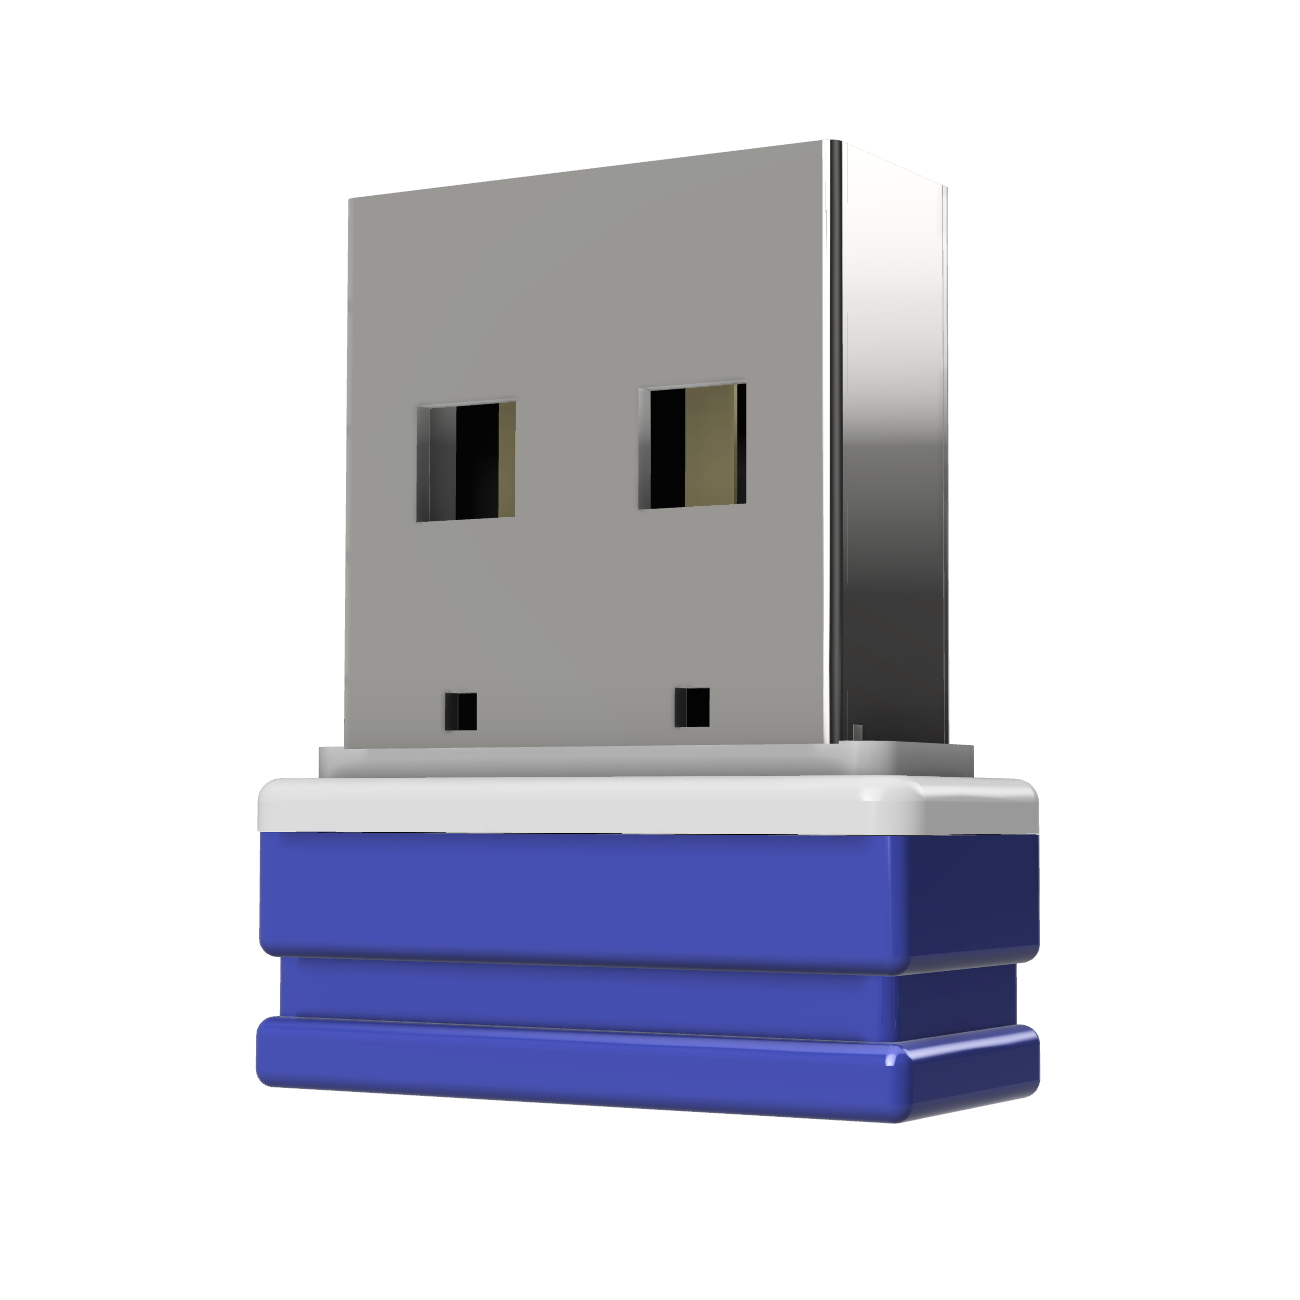 Mini P1 USB-Stick GERMANY USB ®ULTRA GB) 64 (Blau/Weiss,